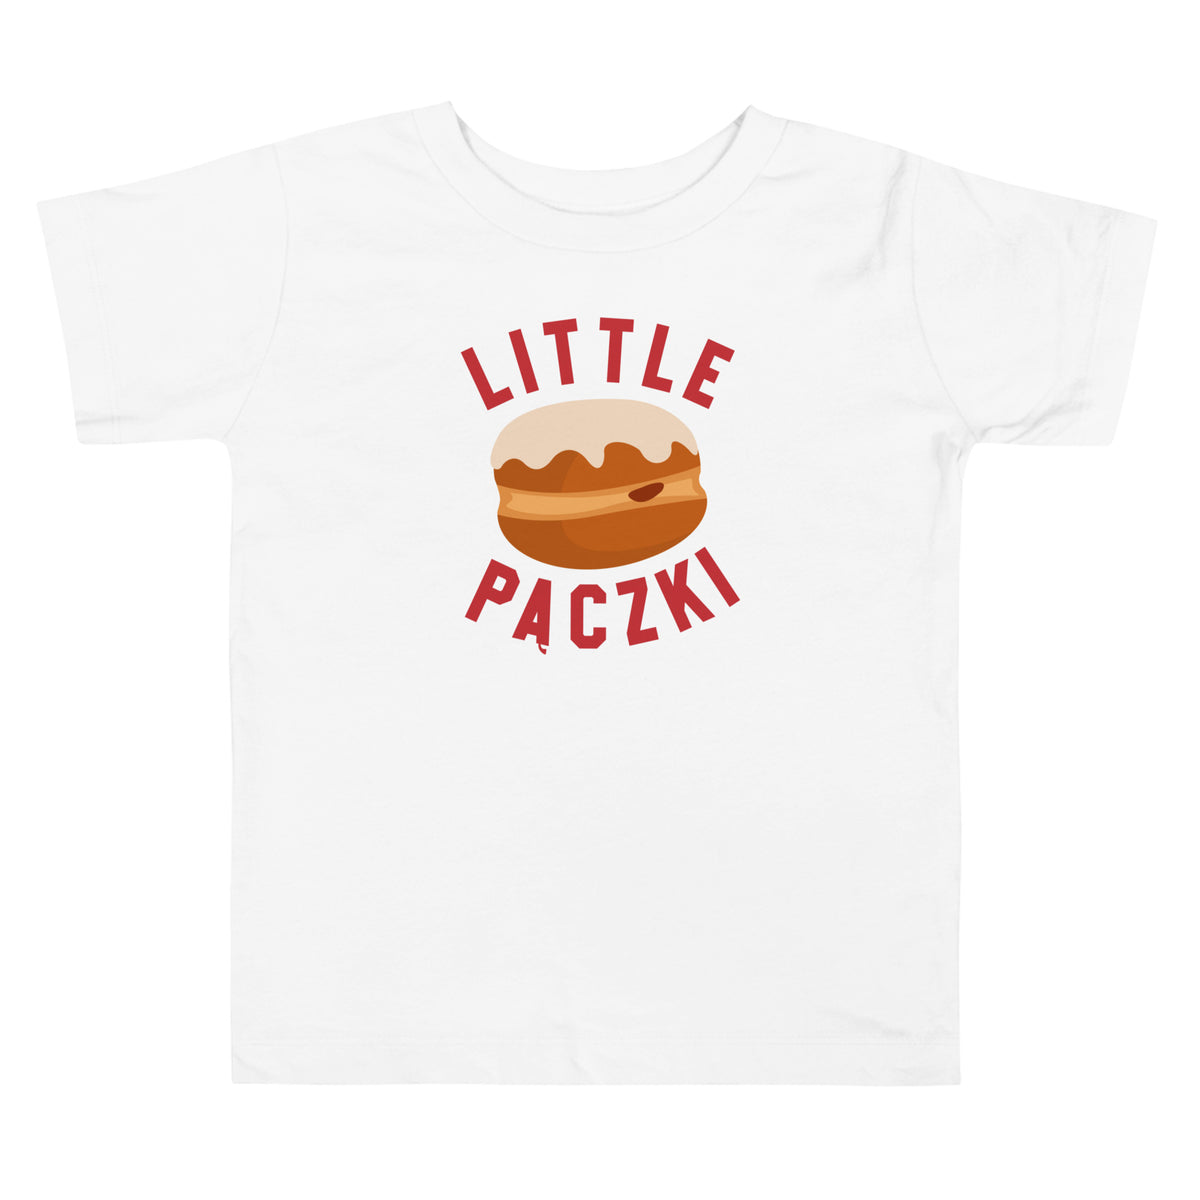 Little Paczki - Toddler Short Sleeve T-shirt - Red / White  2T  